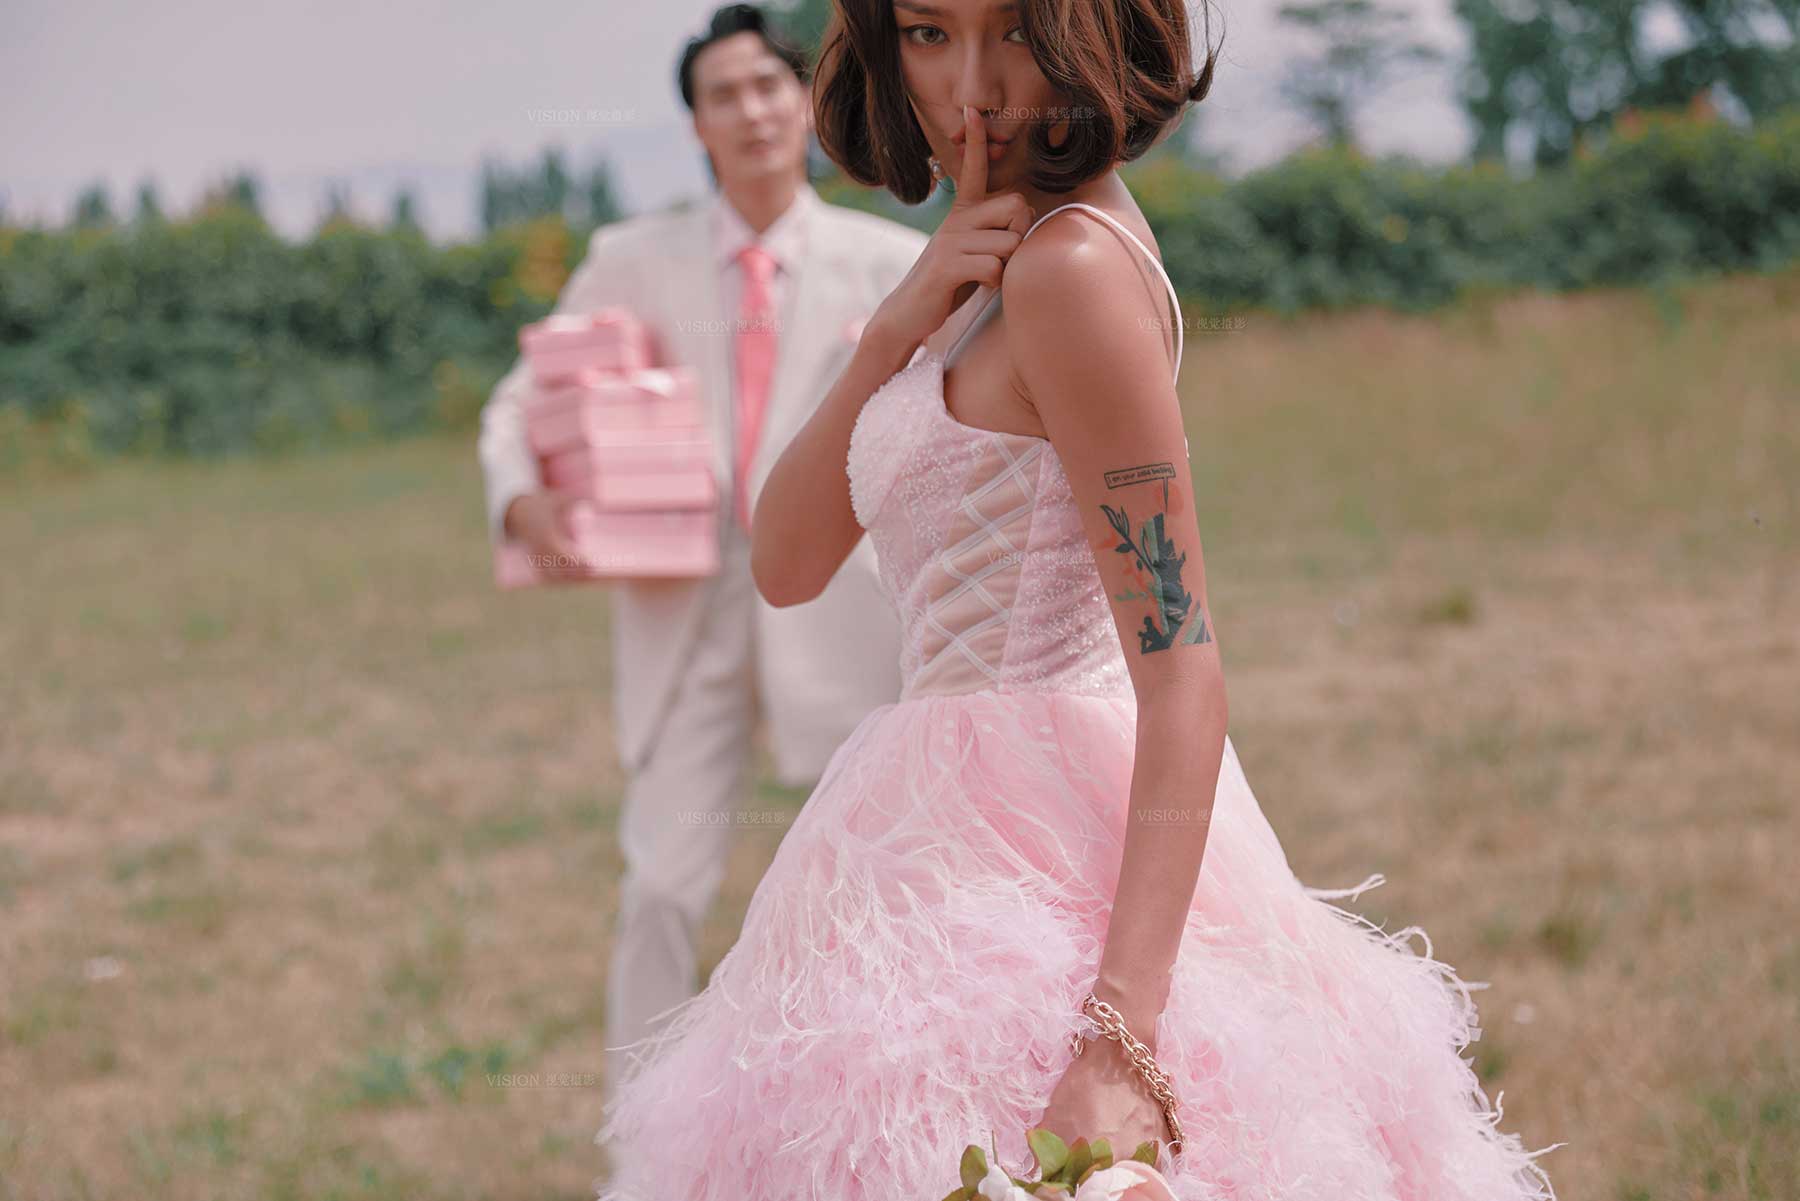 【视觉摄影】粉色系婚纱照